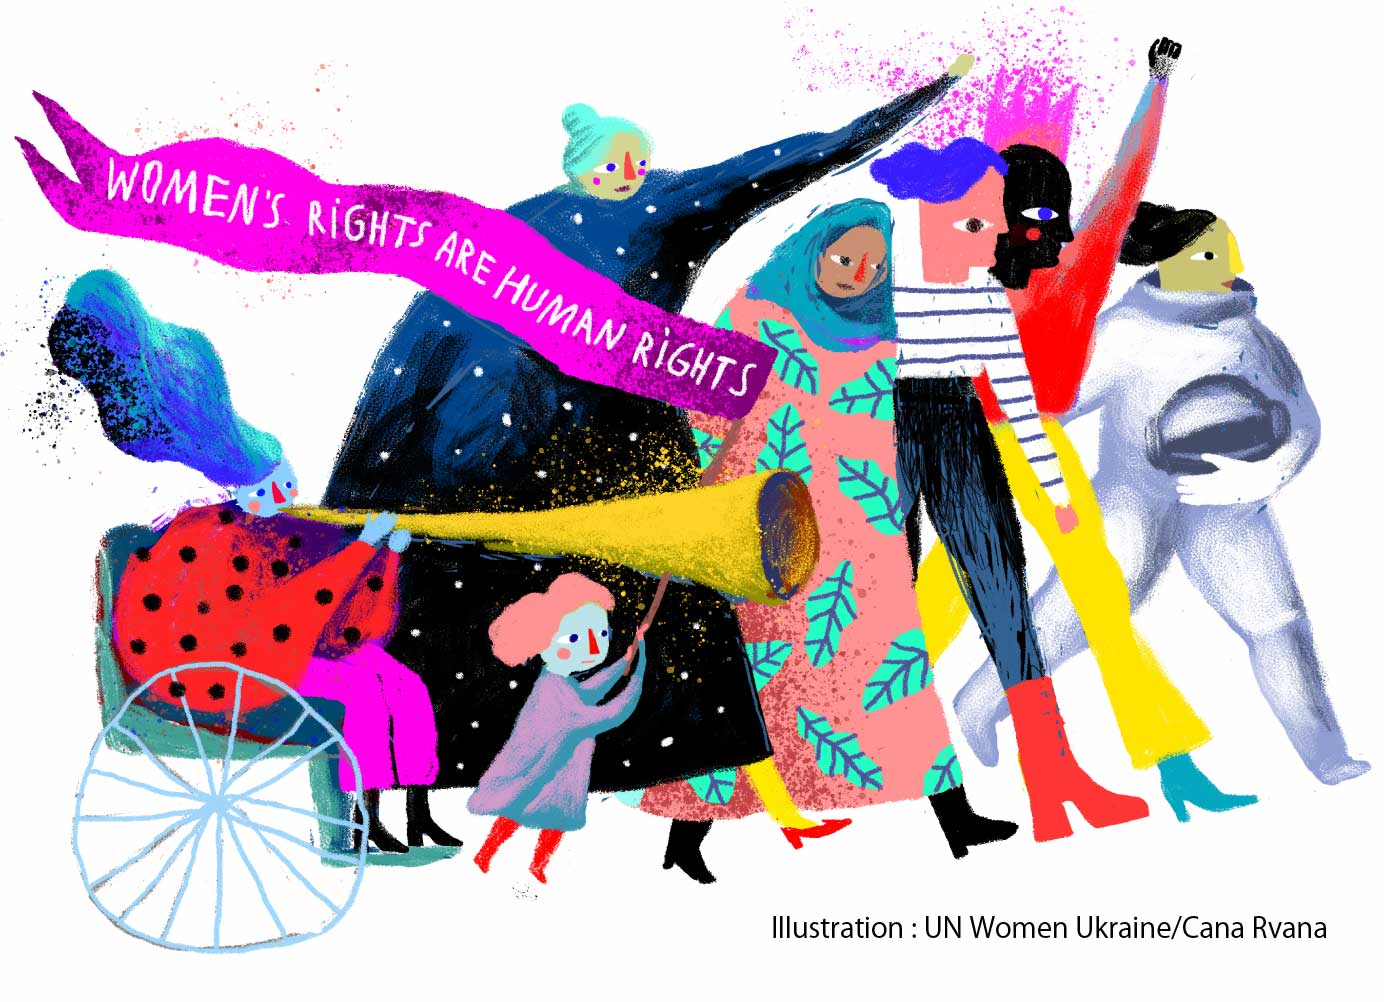 Illustration : UN Women Ukraine/Cana Rvana